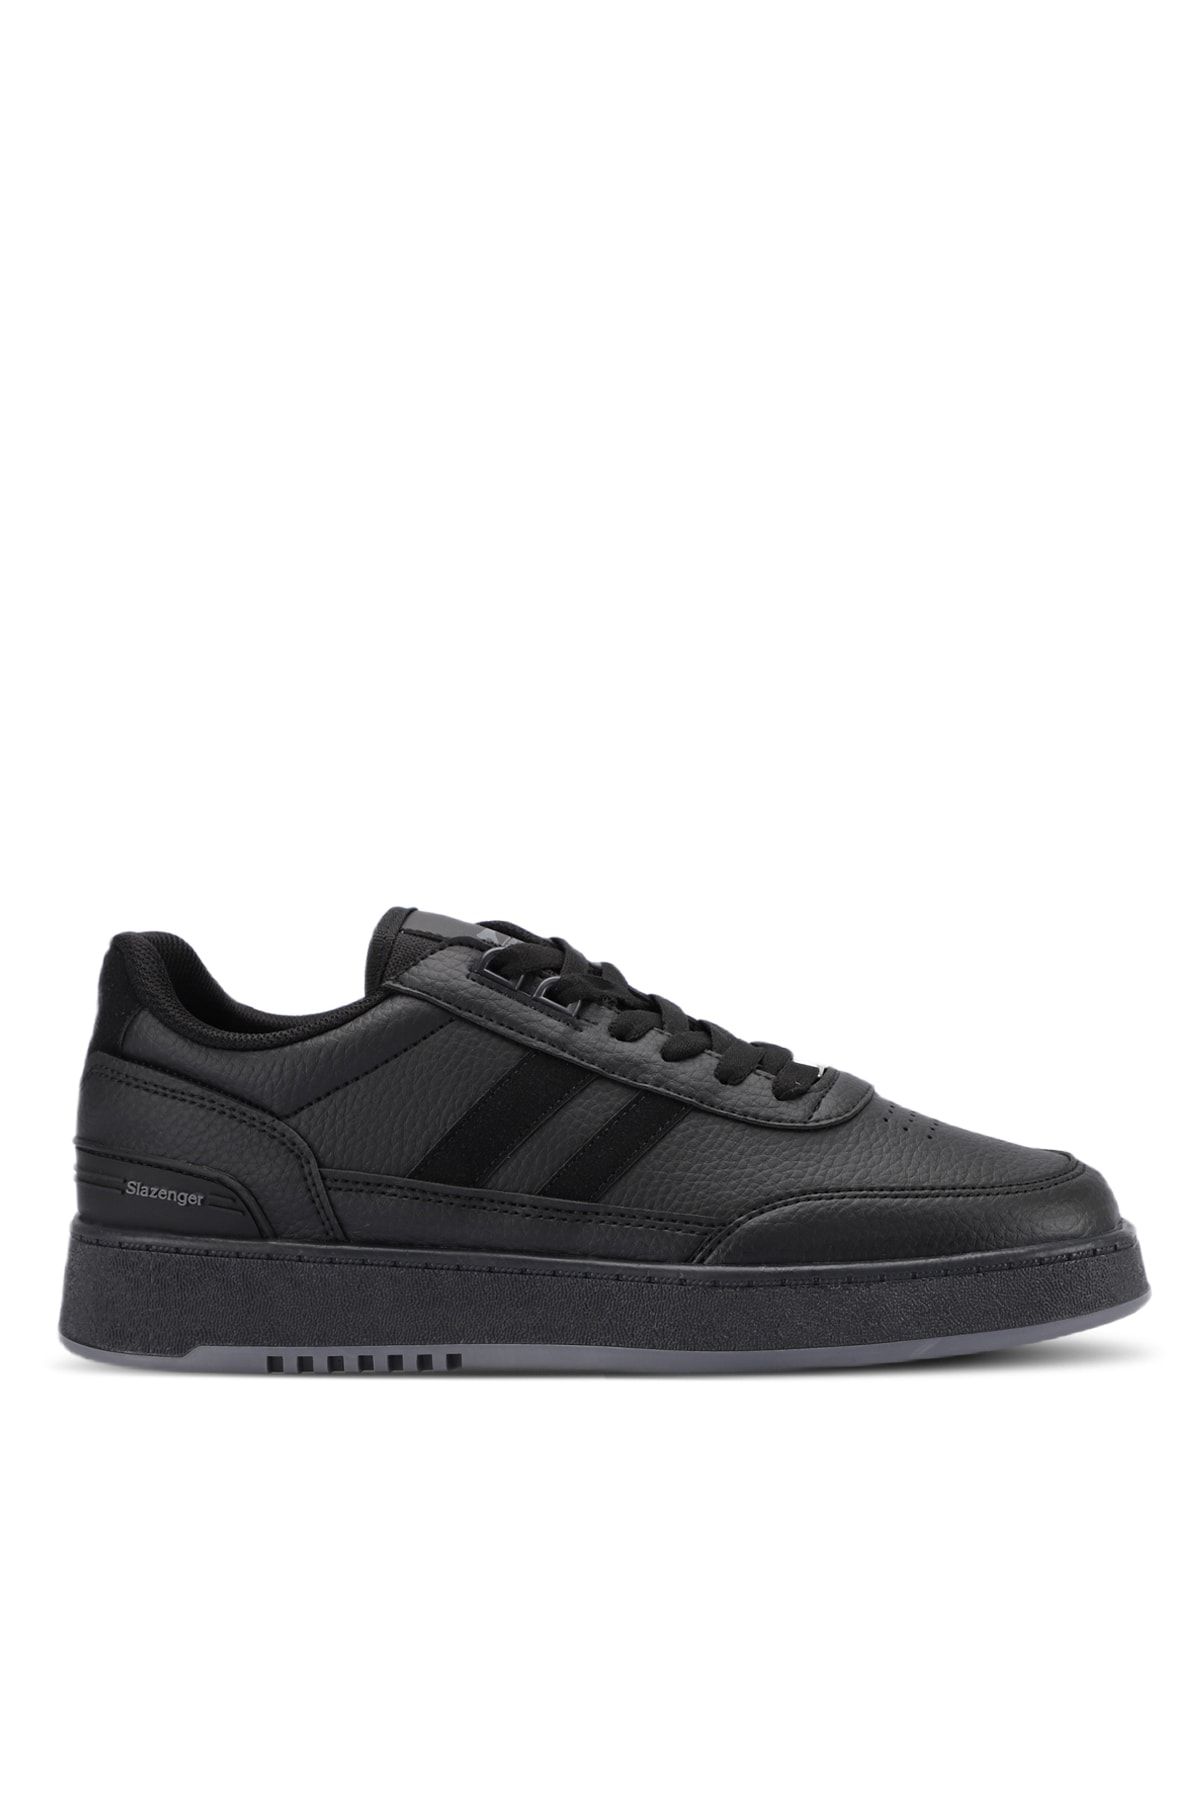 Slazenger DAPHNE Sneaker Erkek Ayakkabı Siyah / Siyah